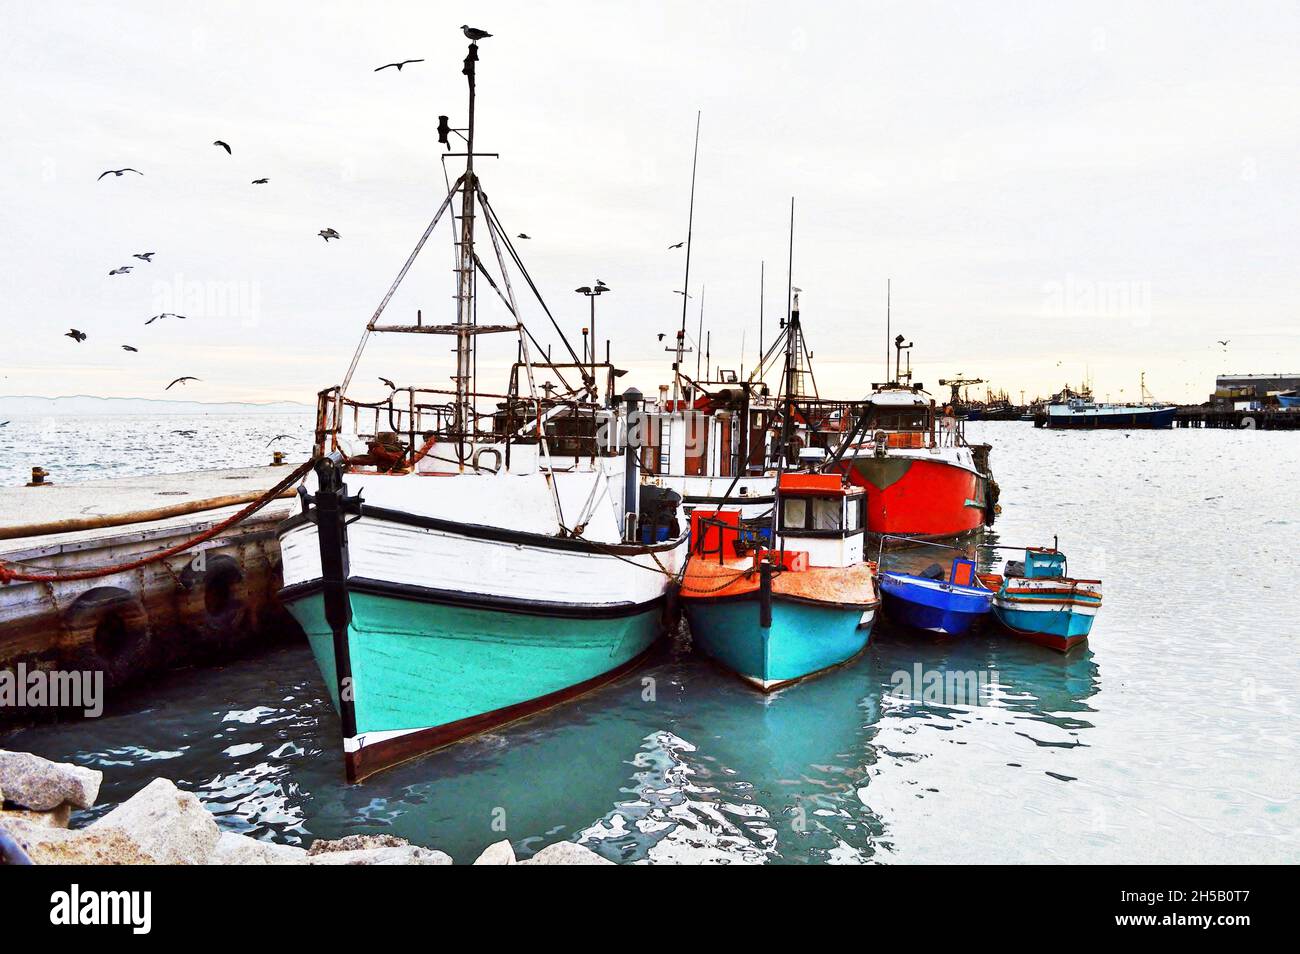 Vue sur la mer avec des bateaux de pêche colorés dans un petit port Banque D'Images